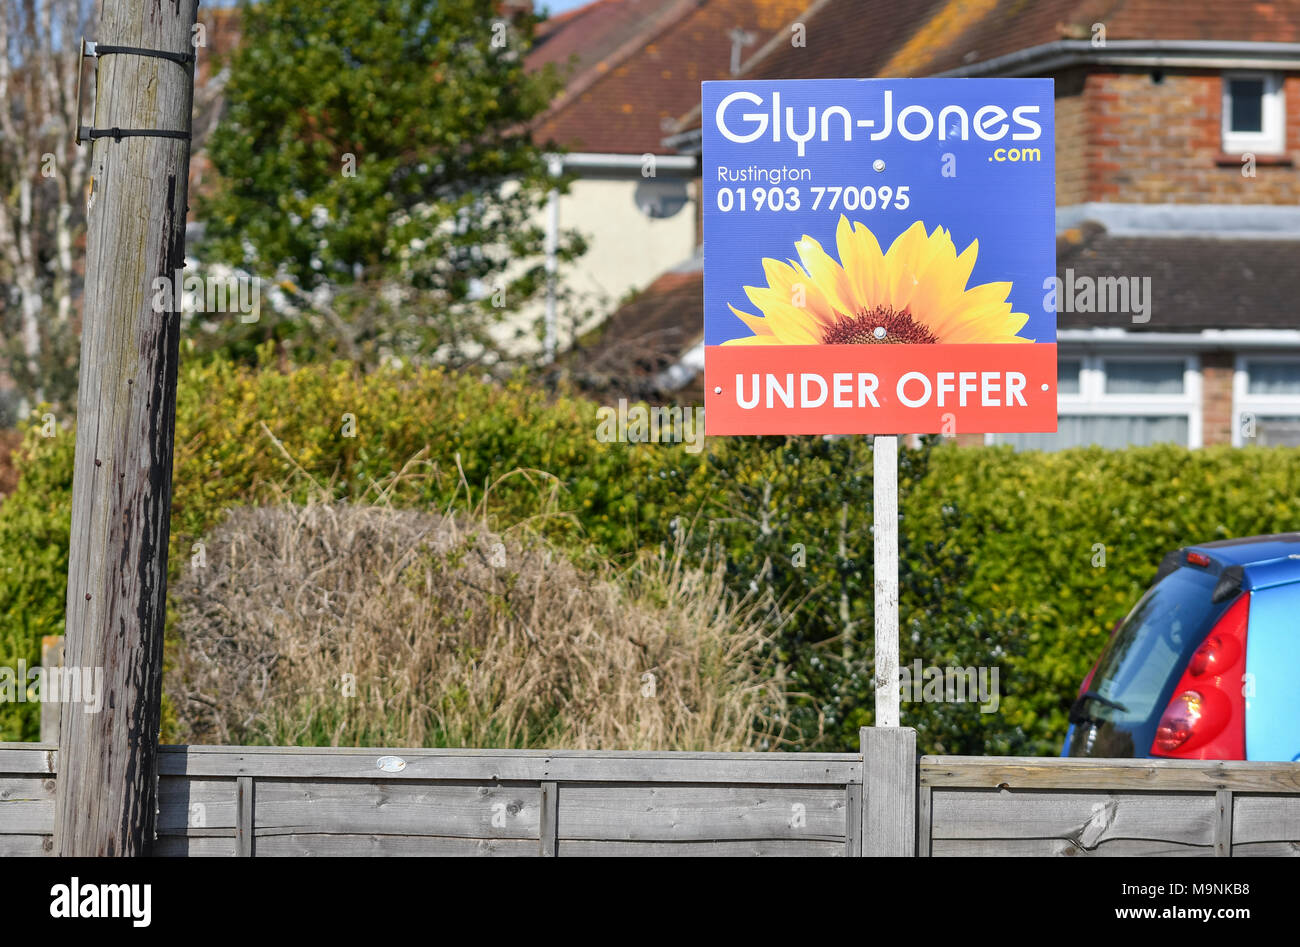 Glyn-Jones Immobilienmaklern unter Angebot' Zeichen außerhalb eines Hauses in Großbritannien. Verkauf Haus. Verkaufen Startseite. Stockfoto